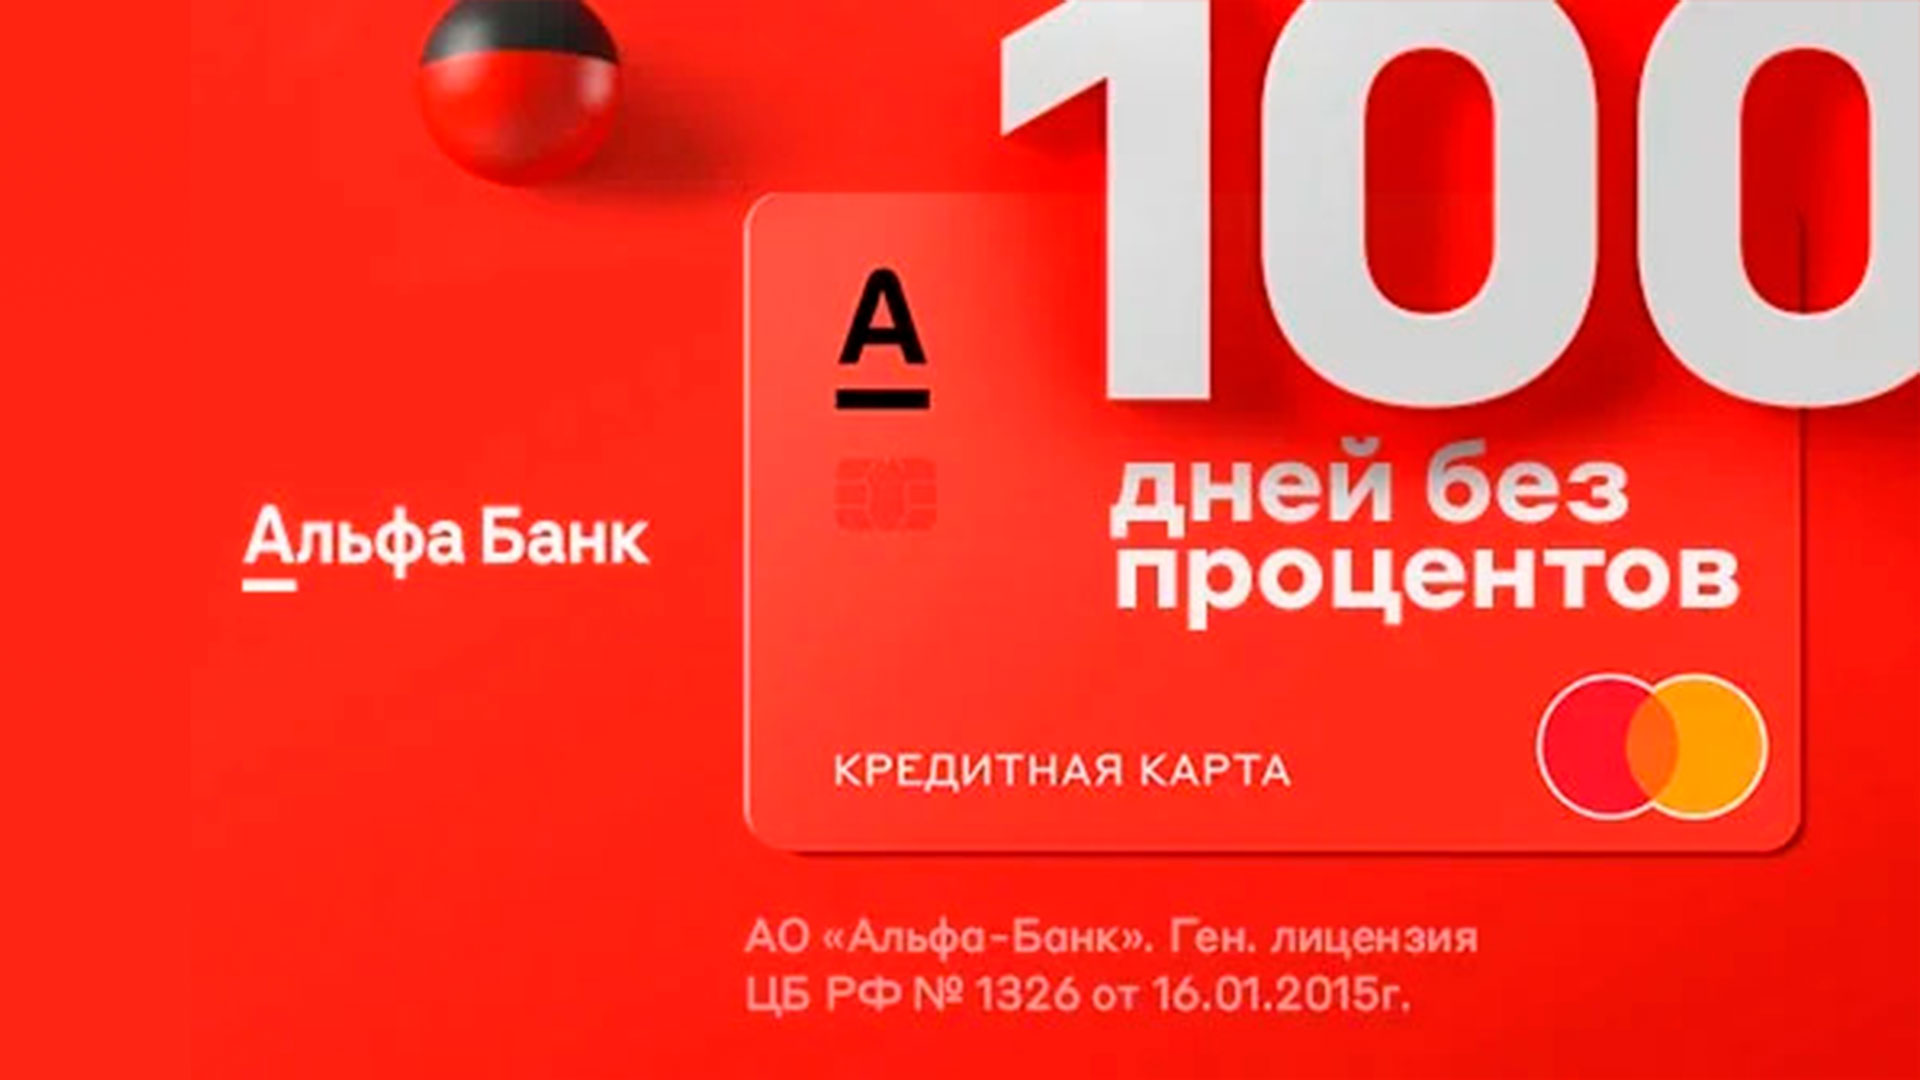 Мтс банк онлайн заявка на кредит кредитная карта займы онлайн вся россия